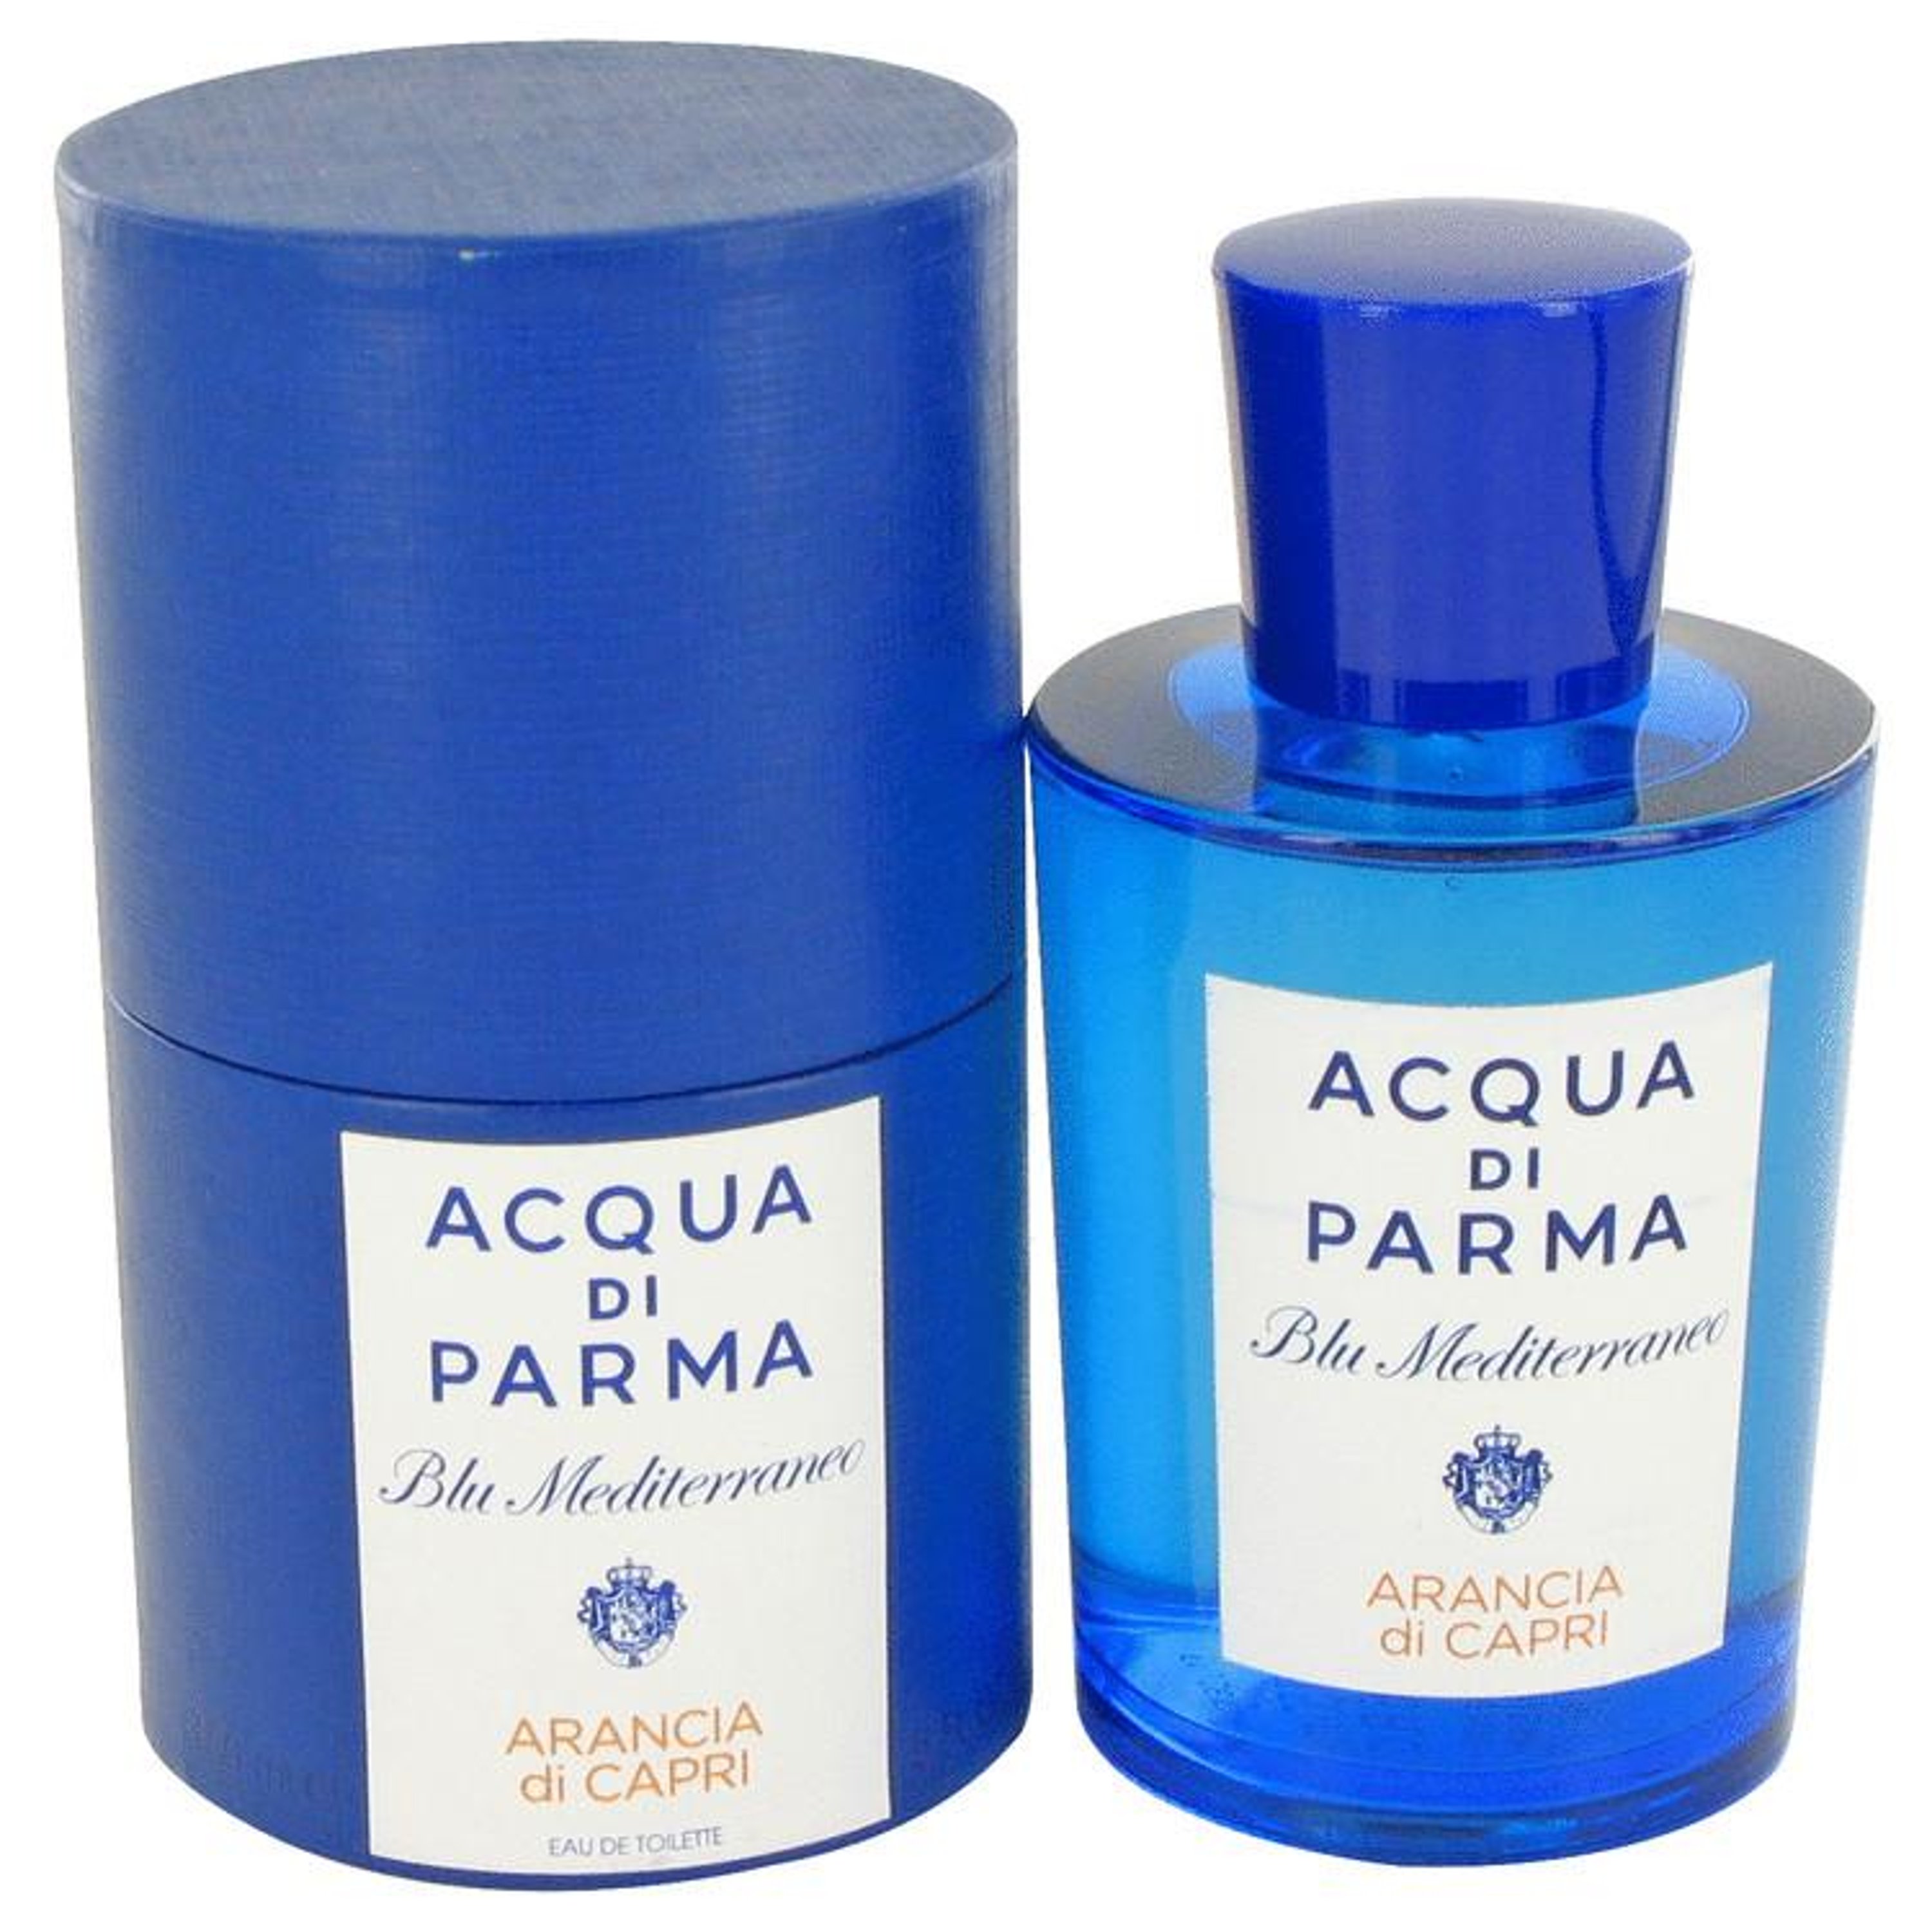 Royall Fragrances Acqua Di Parma Blu Mediterraneo Arancia Di Capri By Acqua Di Parma Eau De Toilette Spray 5 oz